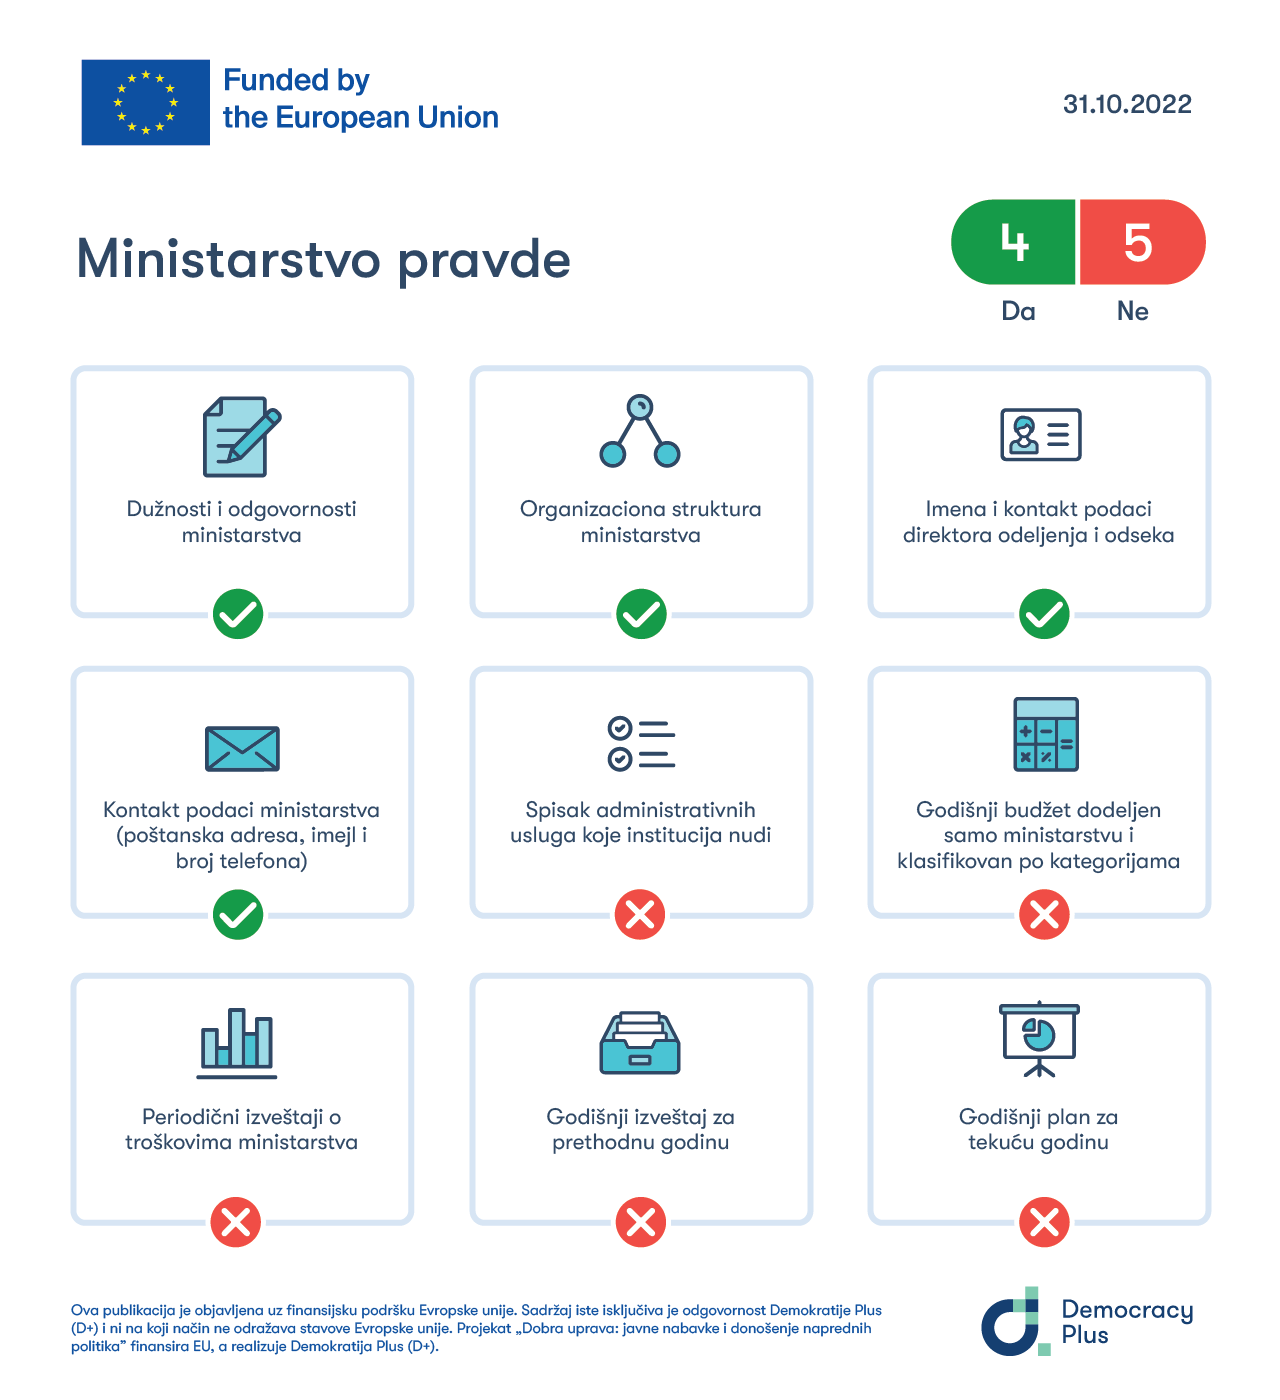 Transparentnost MP-a ocenjena na osnovu ispunjenosti kriterijuma propisanih Administrativnim uputstvom o internet stranicama javnih institucija.